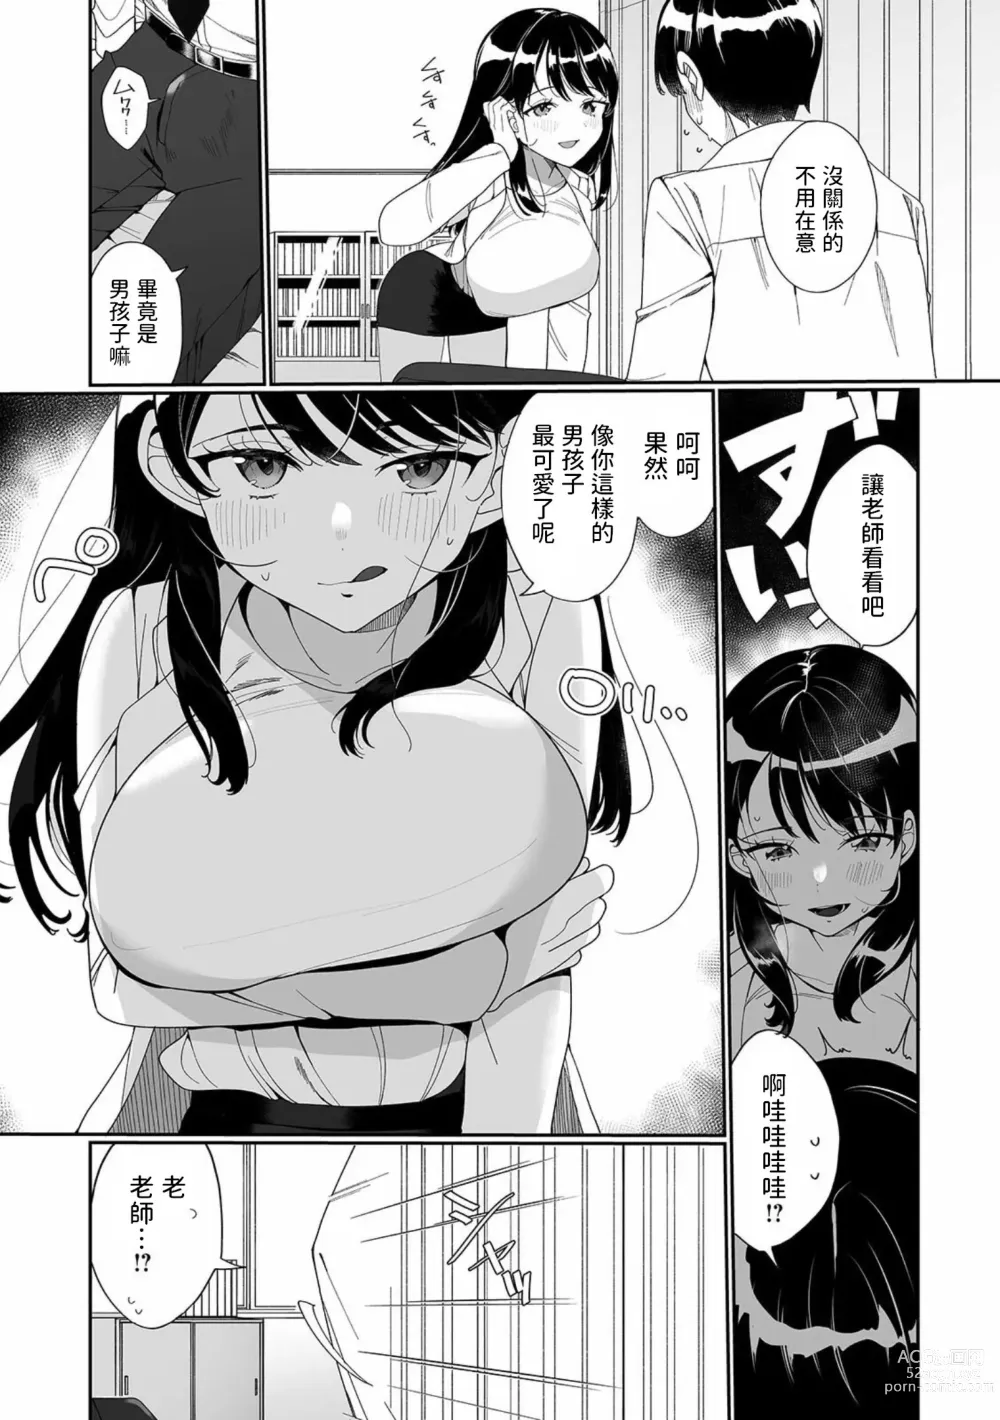 Page 4 of manga Sensei ga Oshiete Ageru